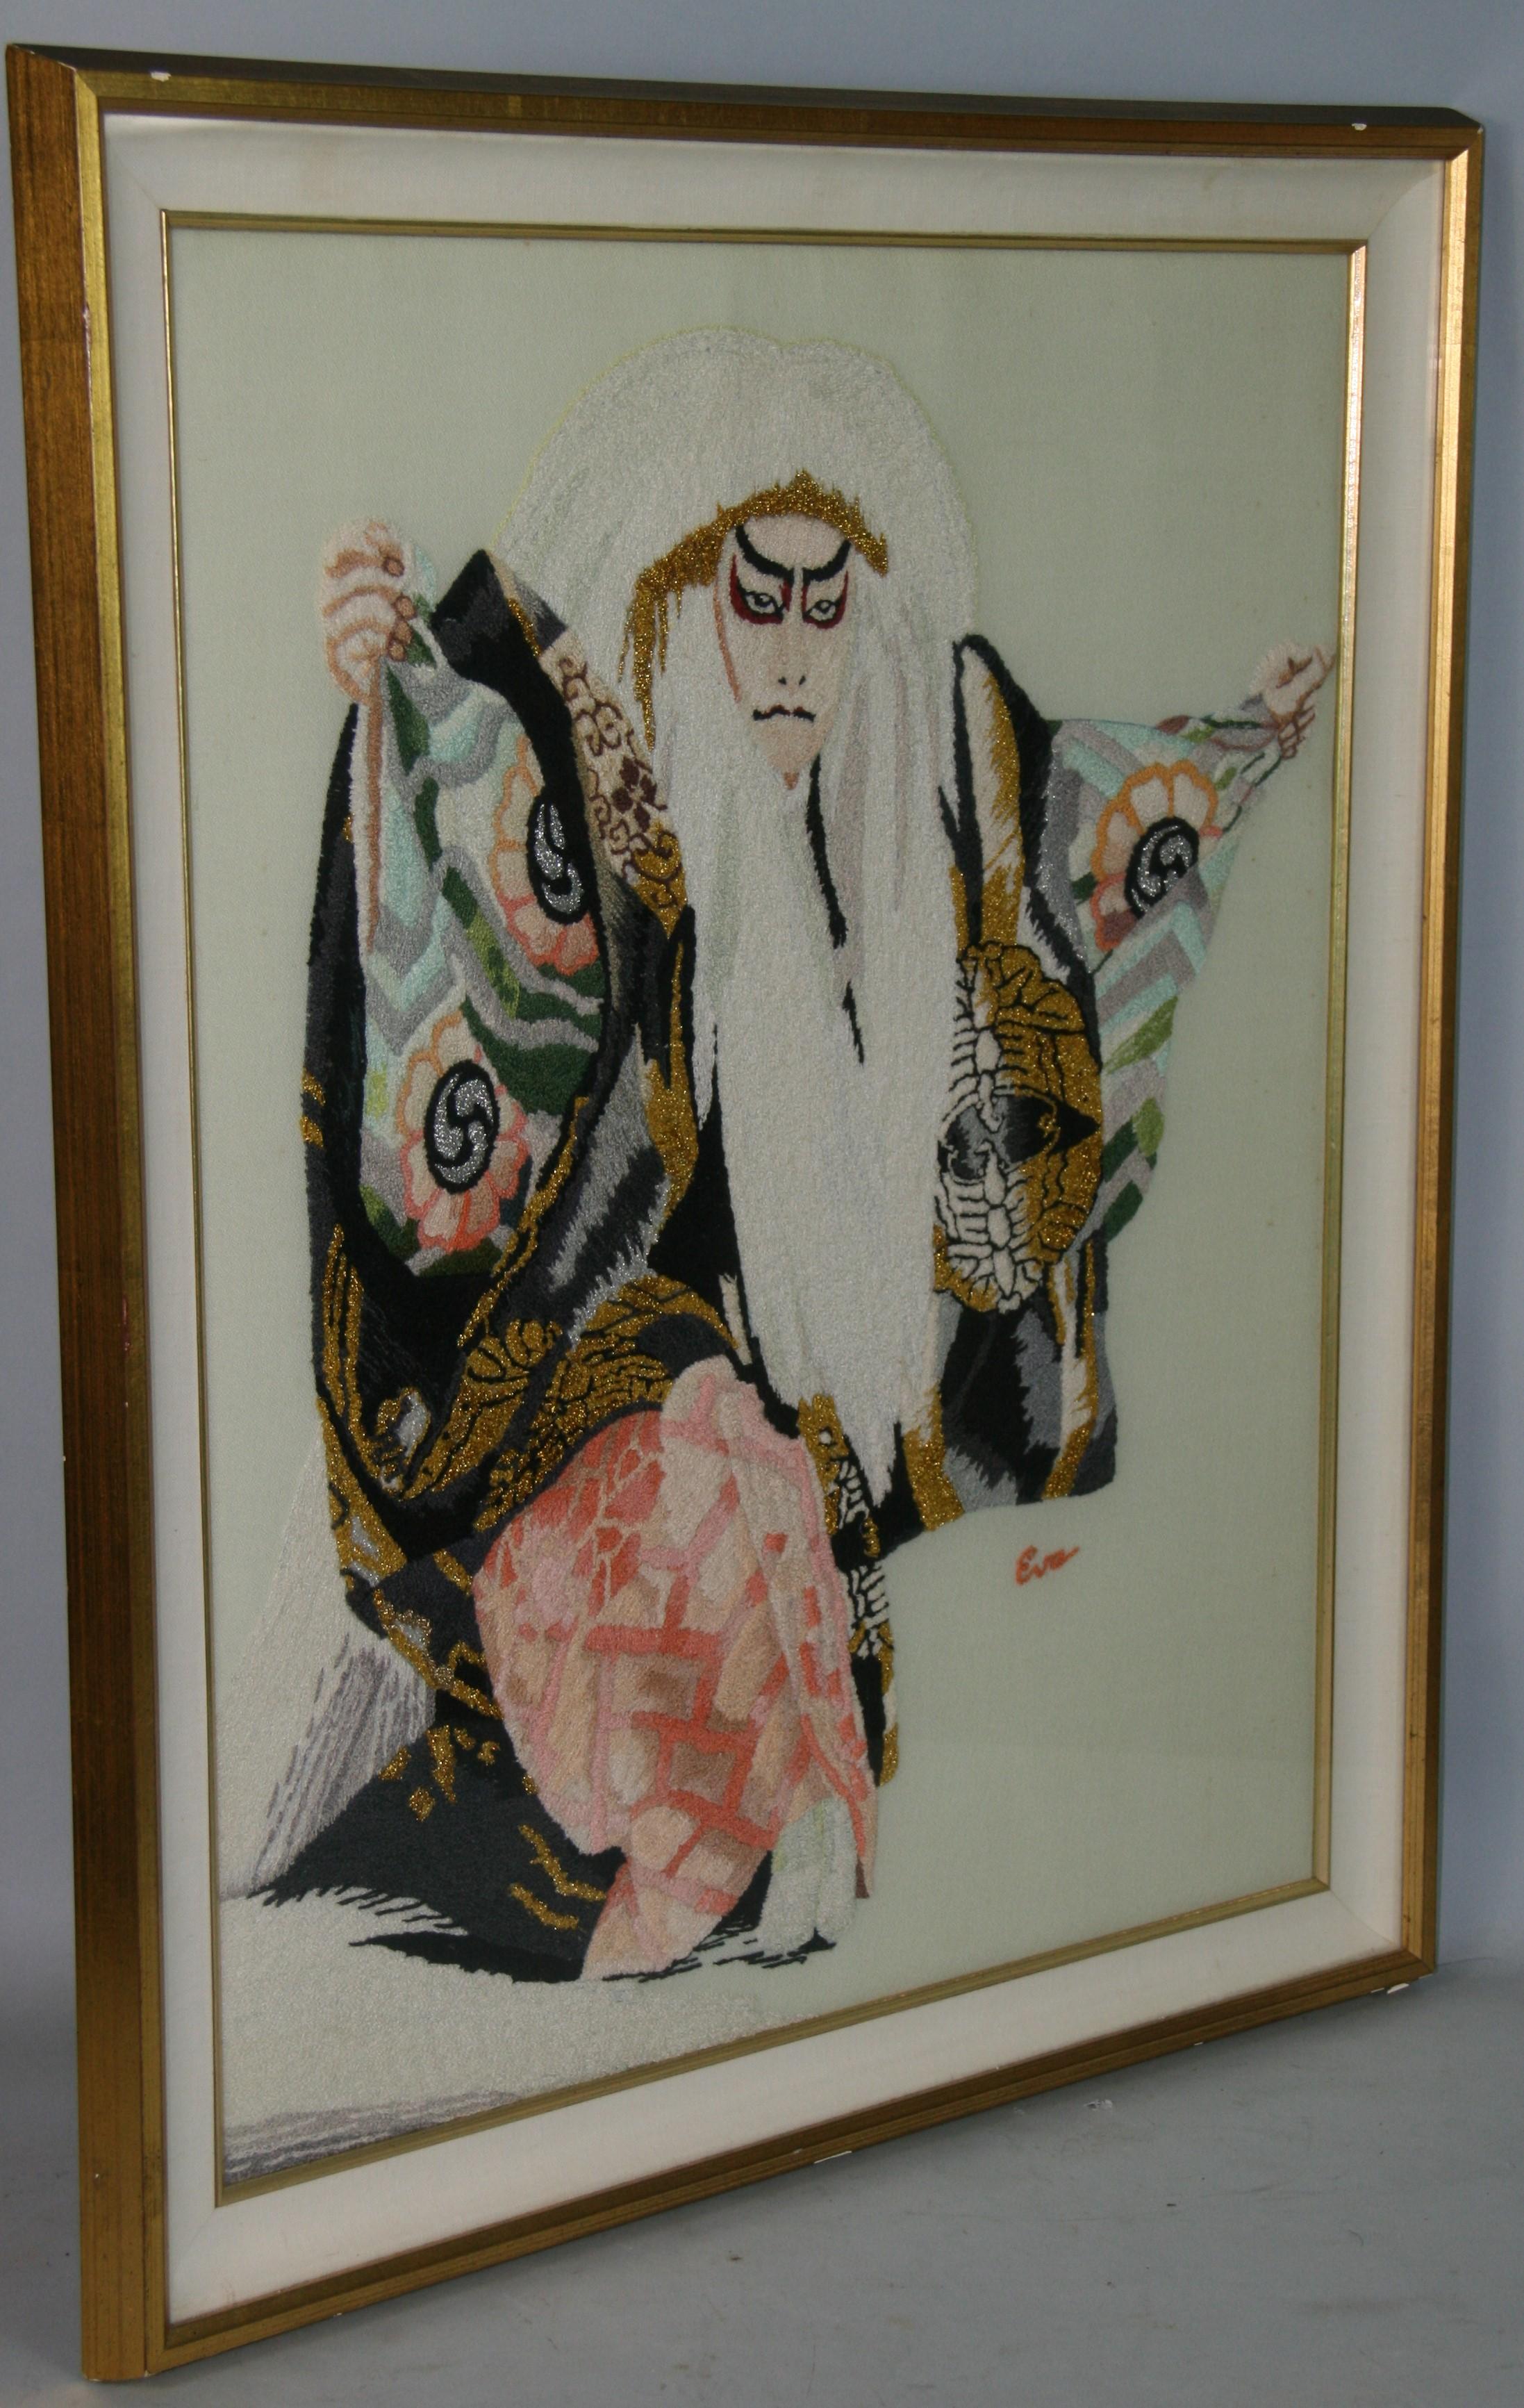 5068 Tapisserie murale artisanale de la danseuse japonaise Kabuki 
signé Eva
Dans un cadre sur mesure